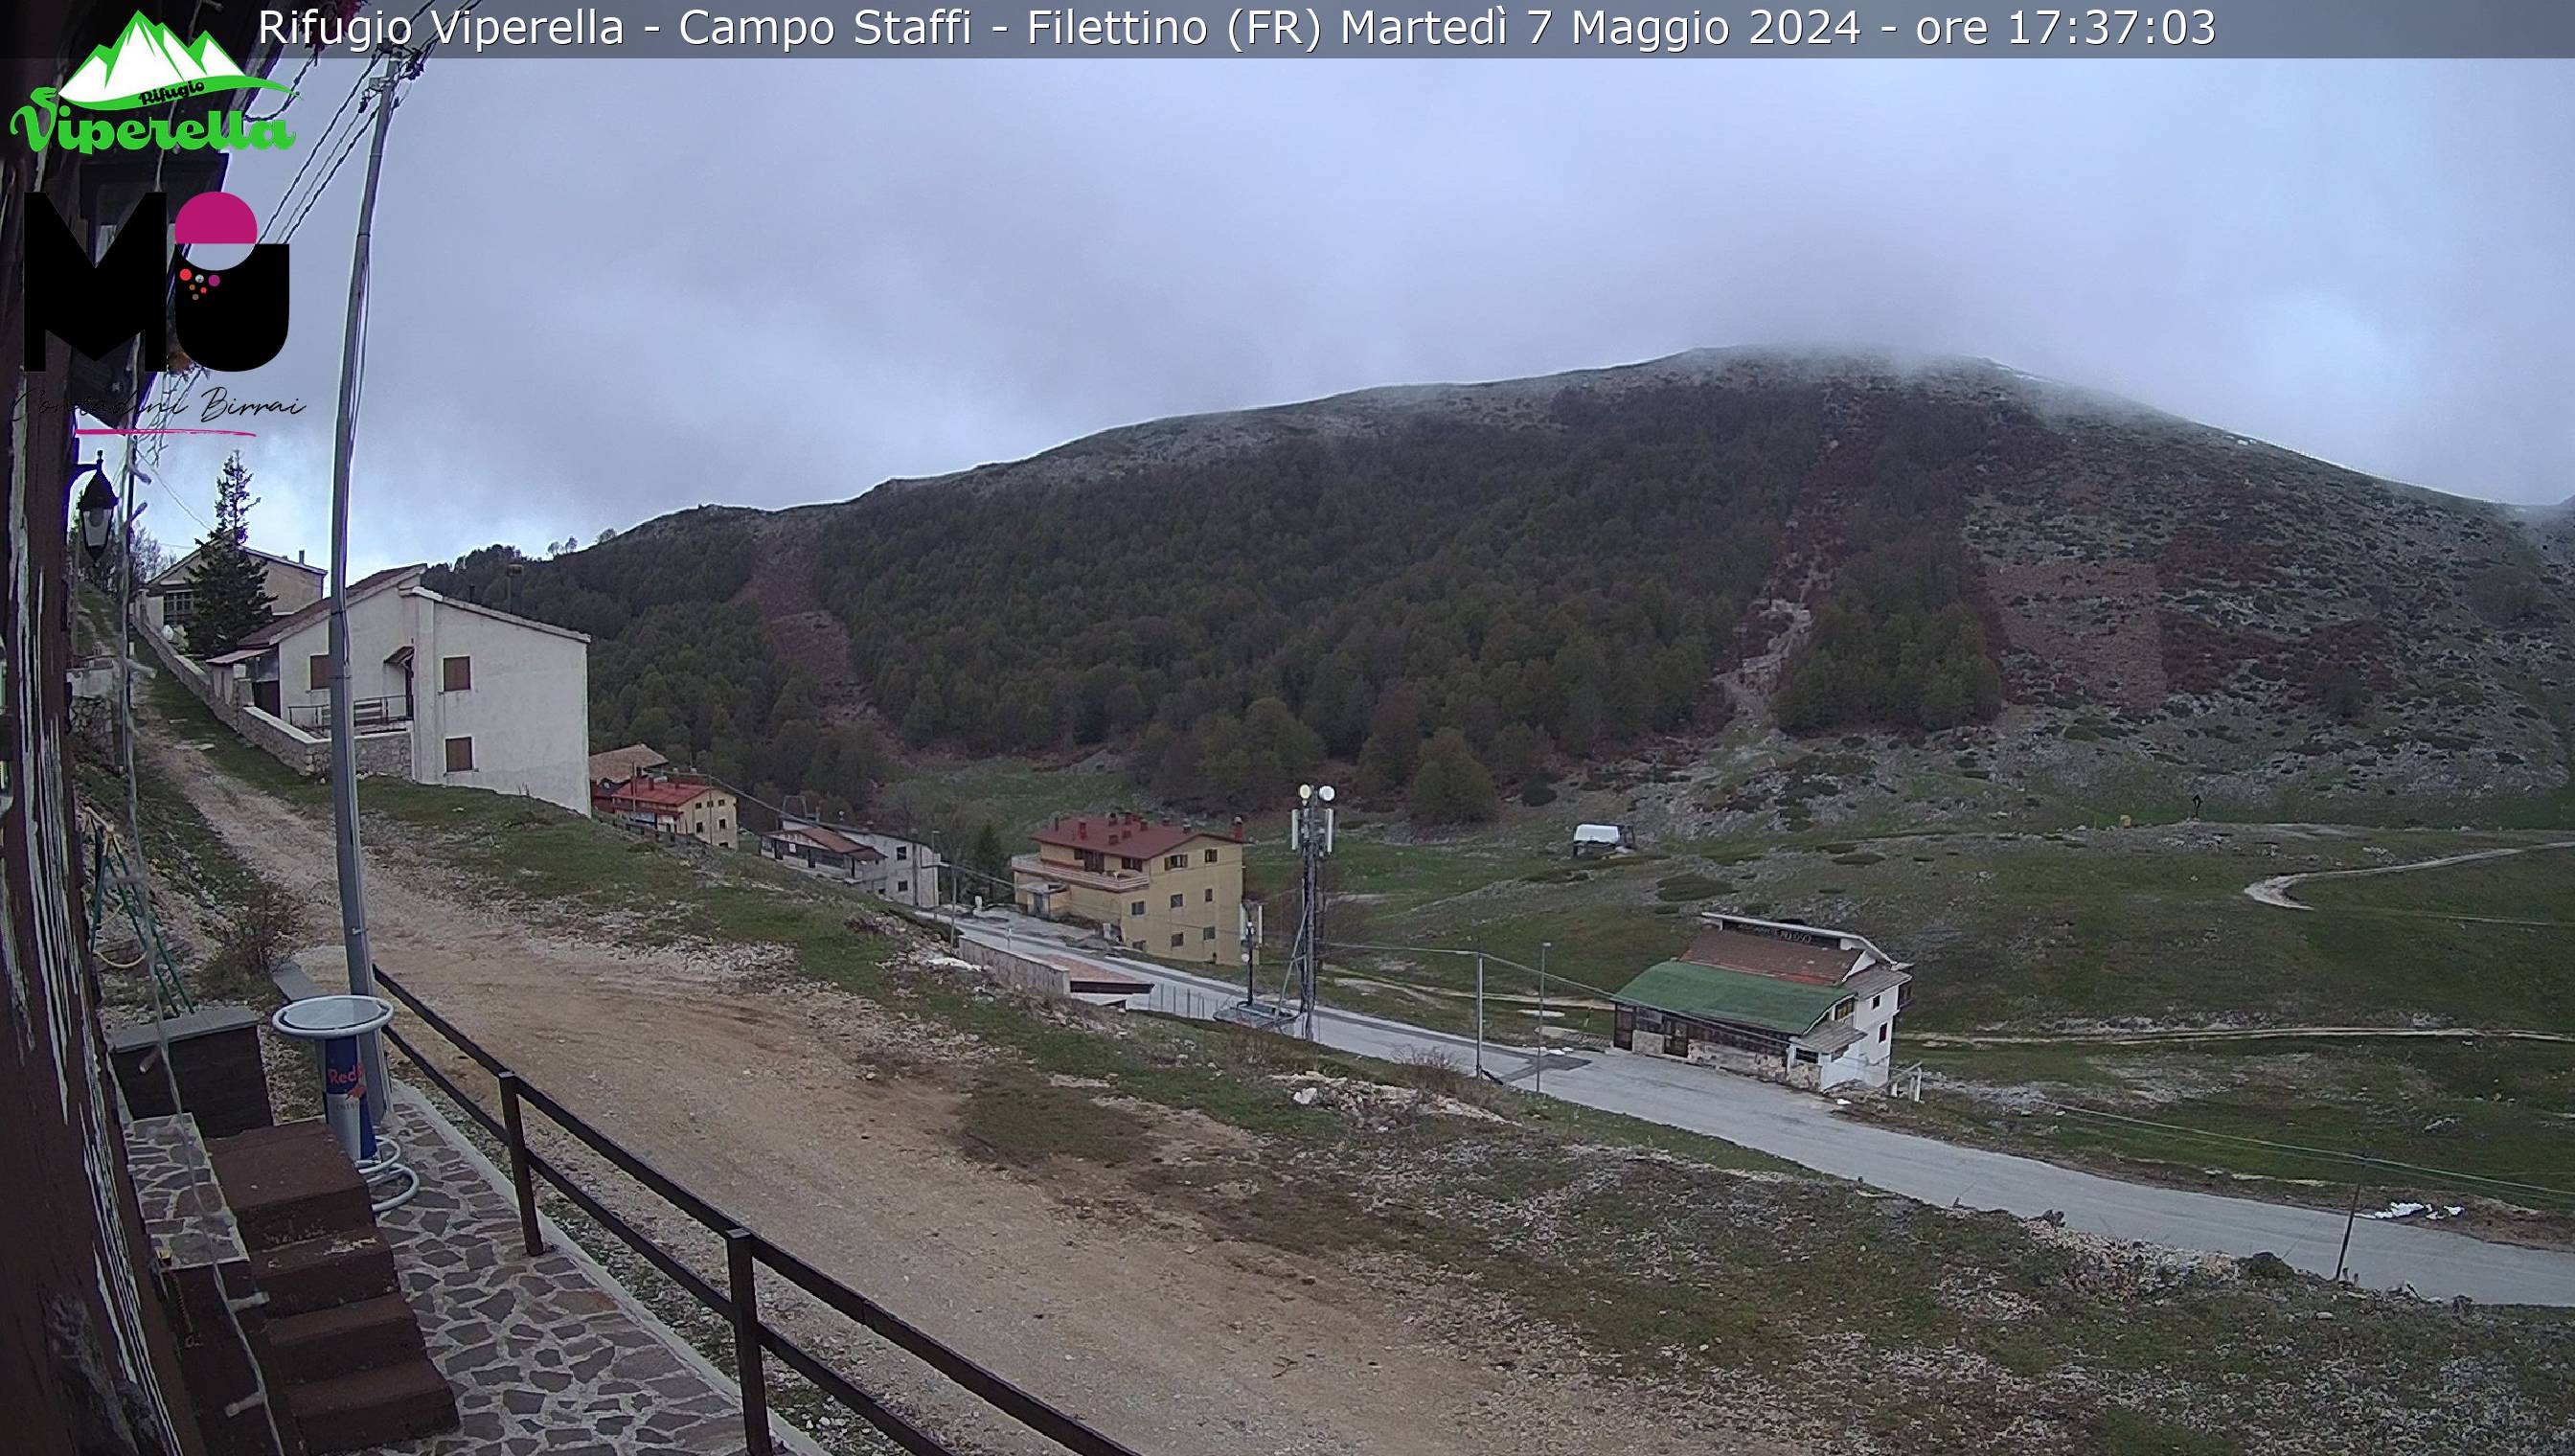 Webcam Filettino, Campo Staffi - Rifugio Viperella